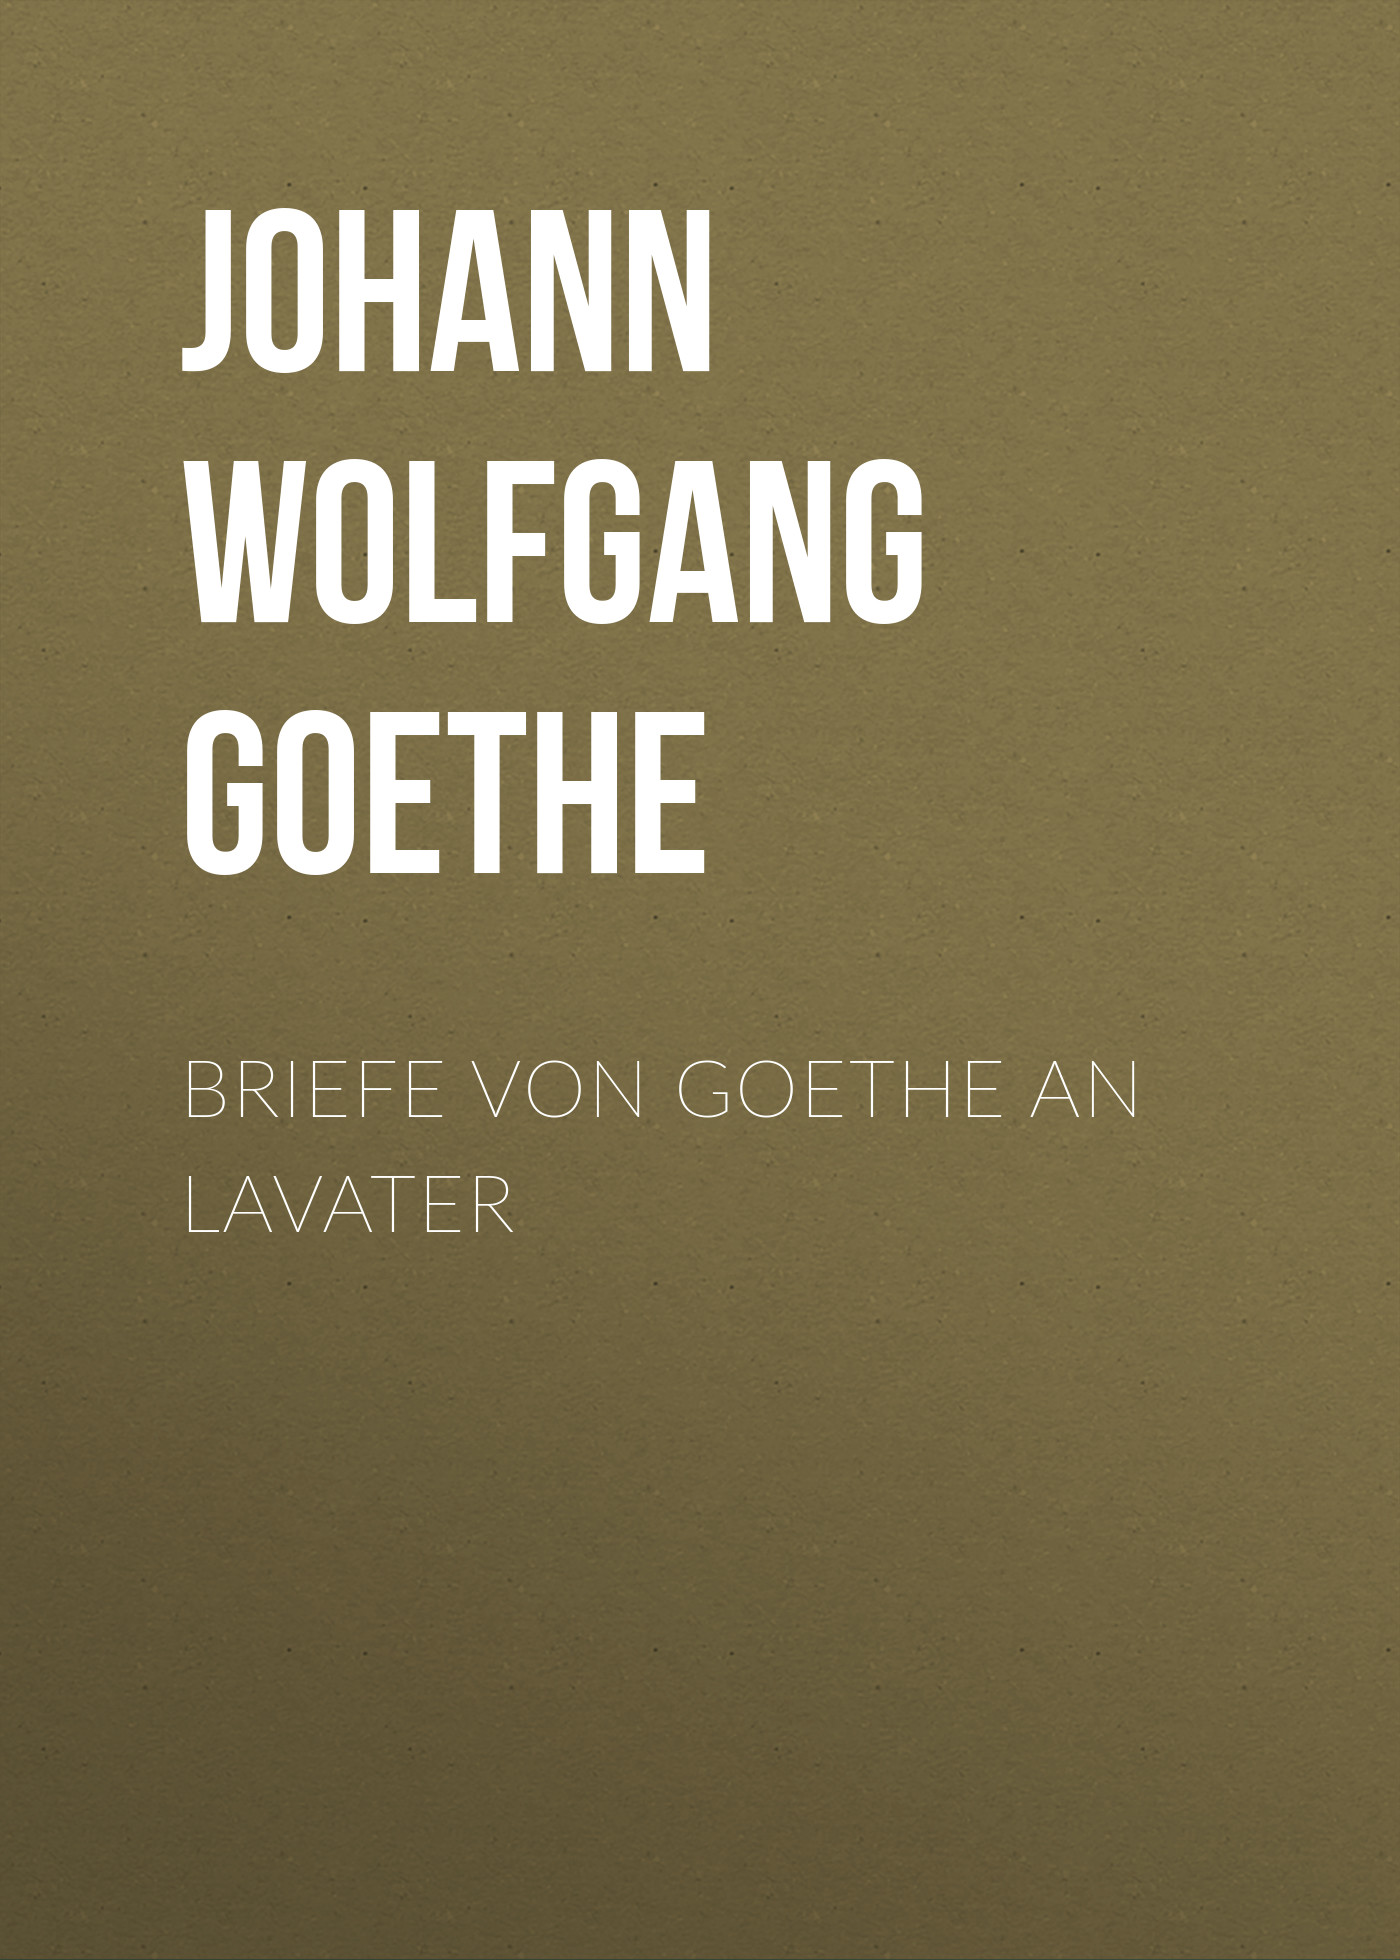 Книга Briefe von Goethe an Lavater из серии , созданная Johann von Goethe, может относится к жанру Зарубежная старинная литература, Зарубежная классика. Стоимость электронной книги Briefe von Goethe an Lavater с идентификатором 24938253 составляет 0 руб.